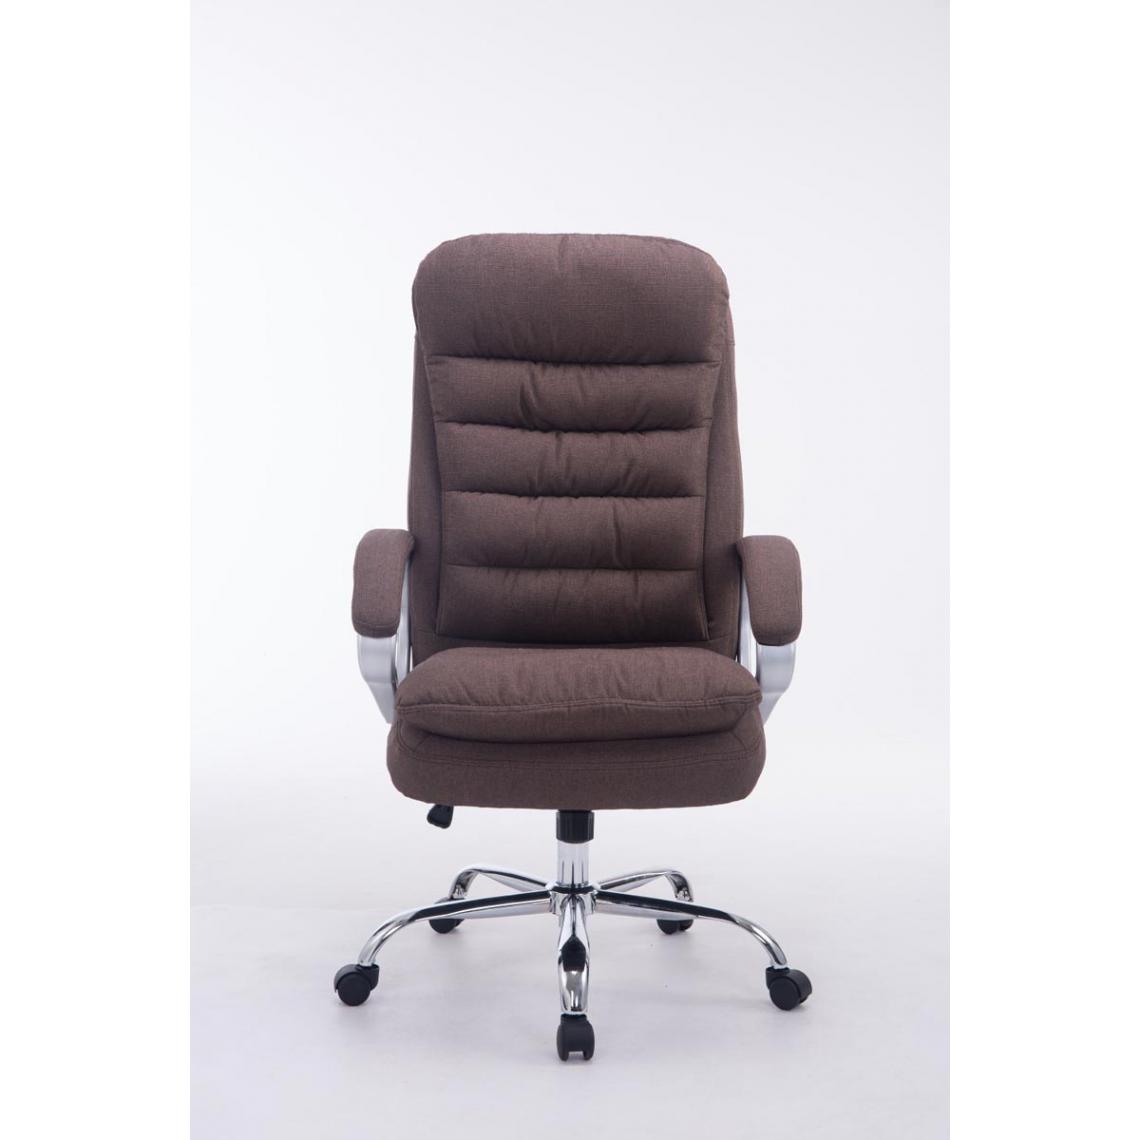 Icaverne - Magnifique Chaise de bureau serie Budapest Vancouver tissu couleur marron - Chaises